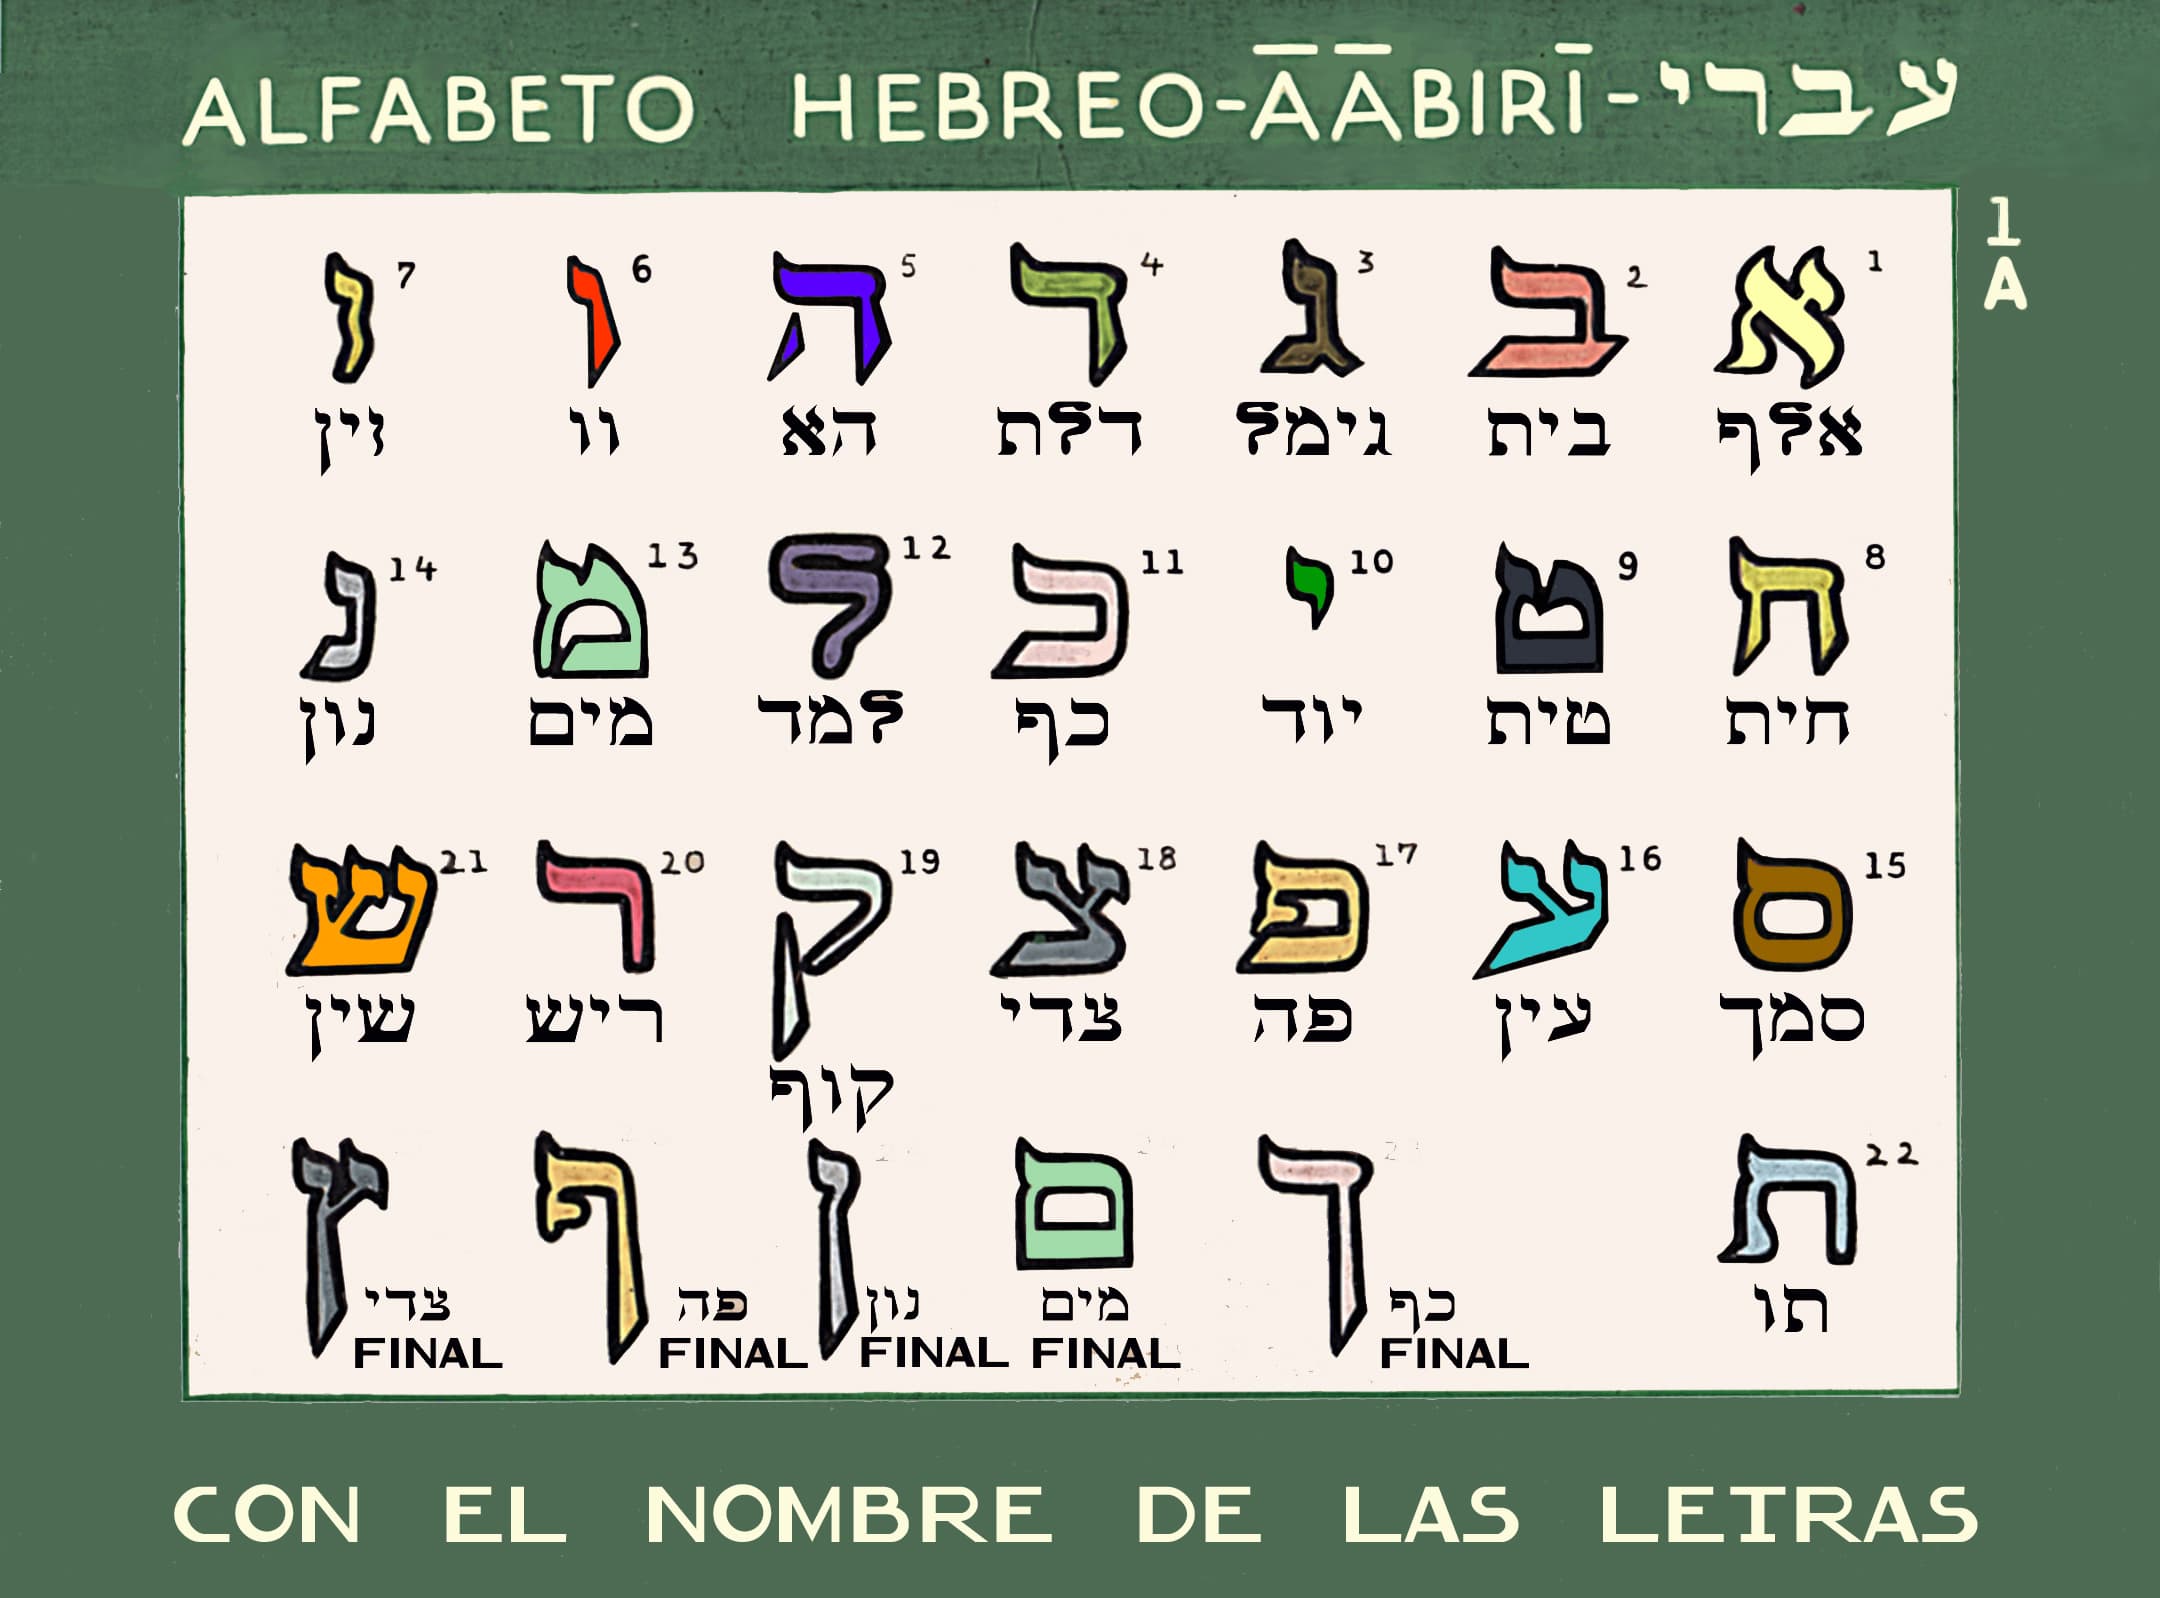 Cómo Aprender Hebreo - Aprende Hebreo Online 24/7 desde tu casa